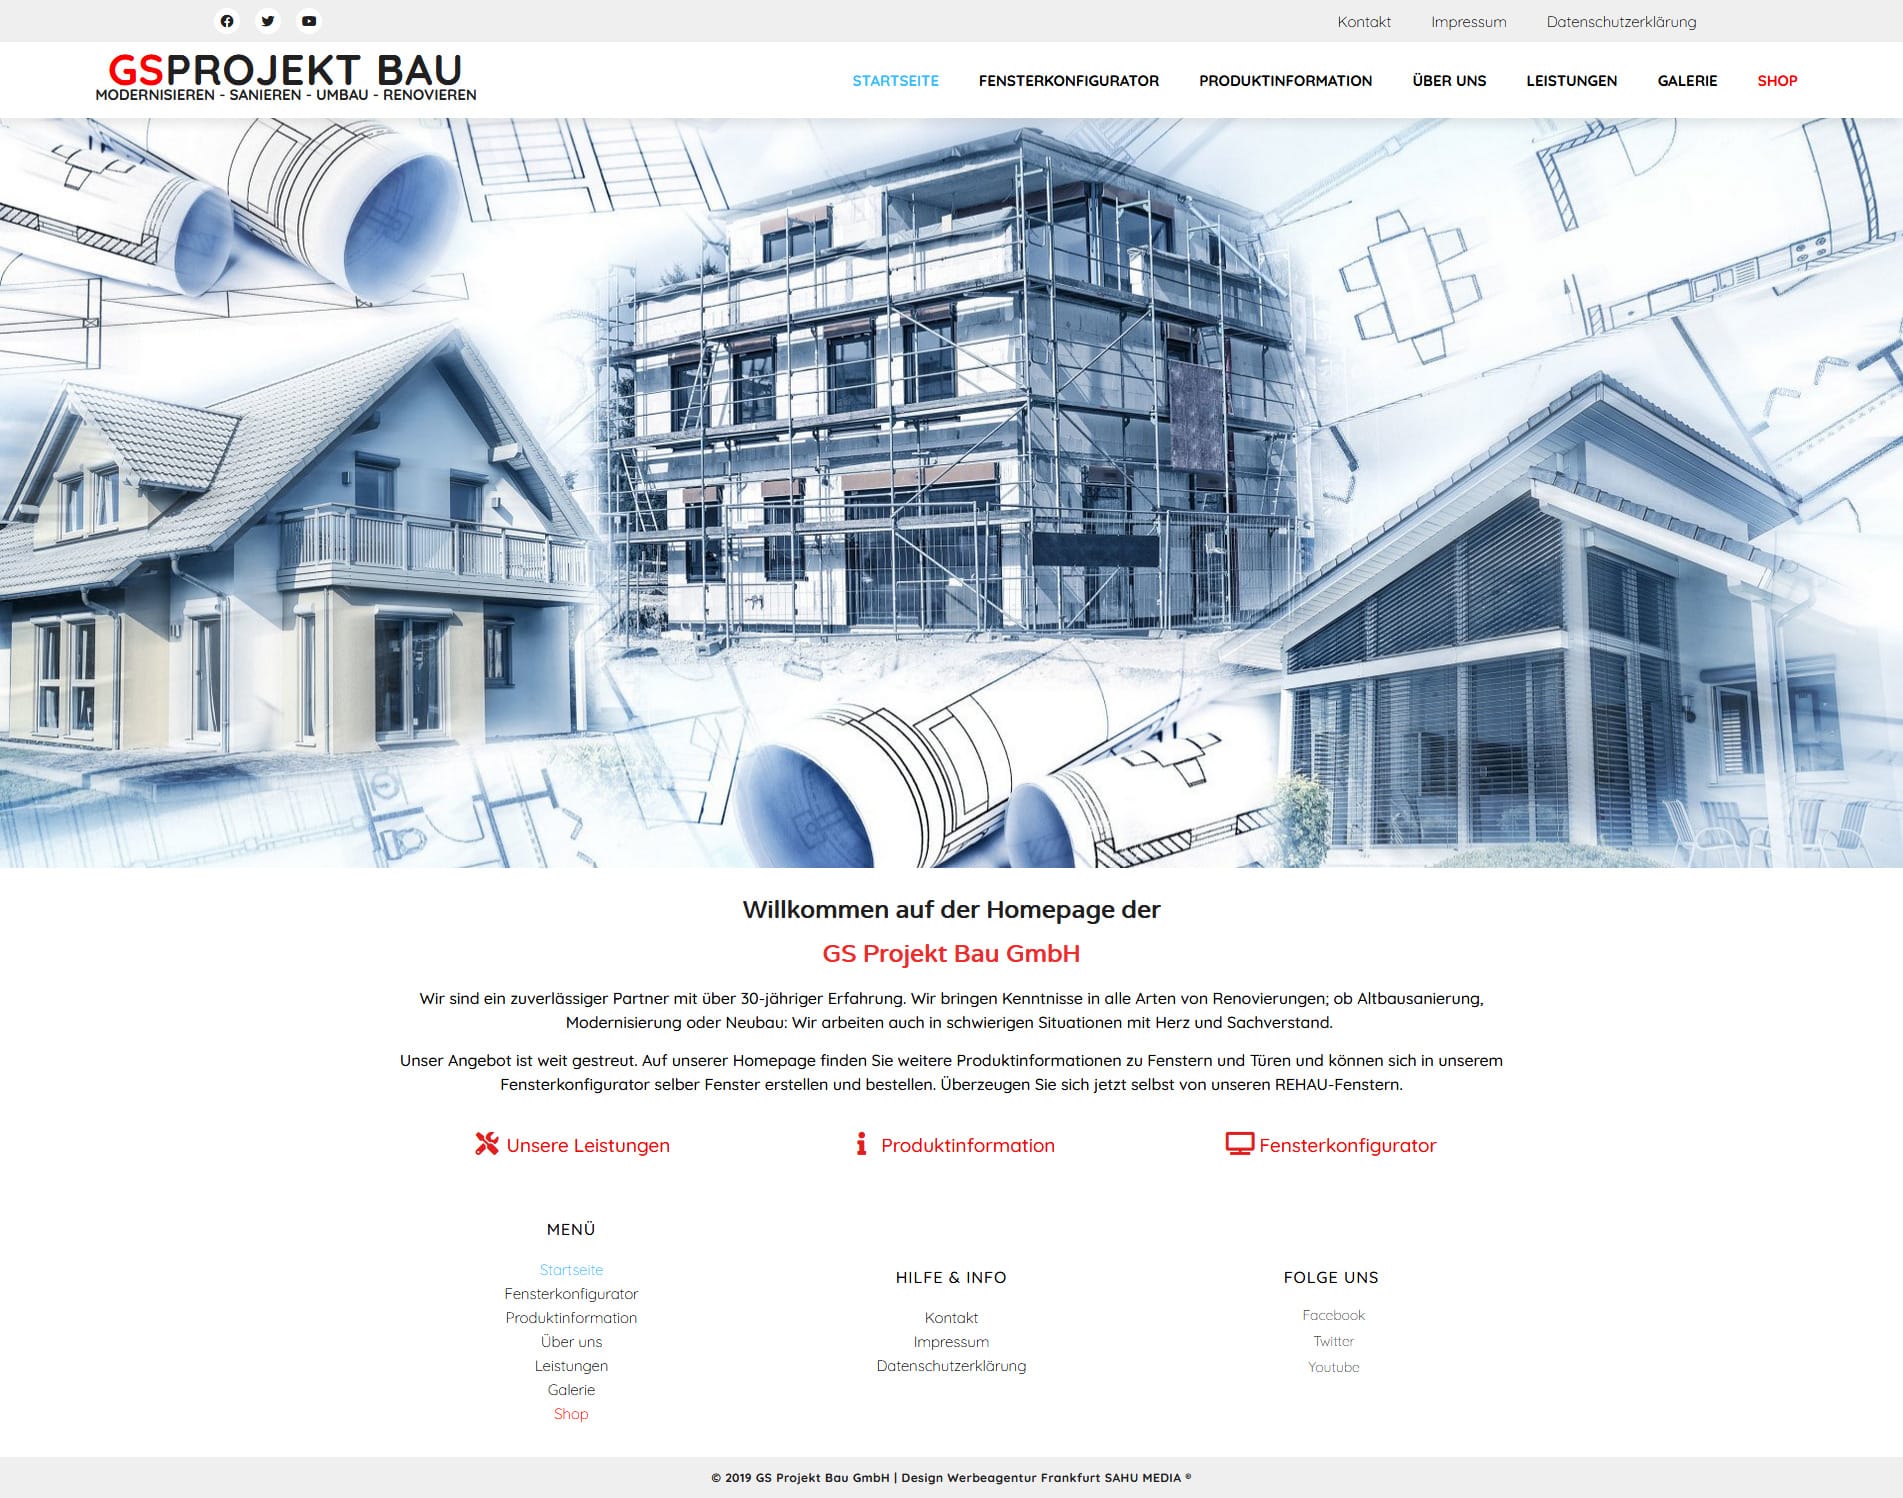 GSProjekt Bau GmbH Modernisieren – Sanieren – Umbau